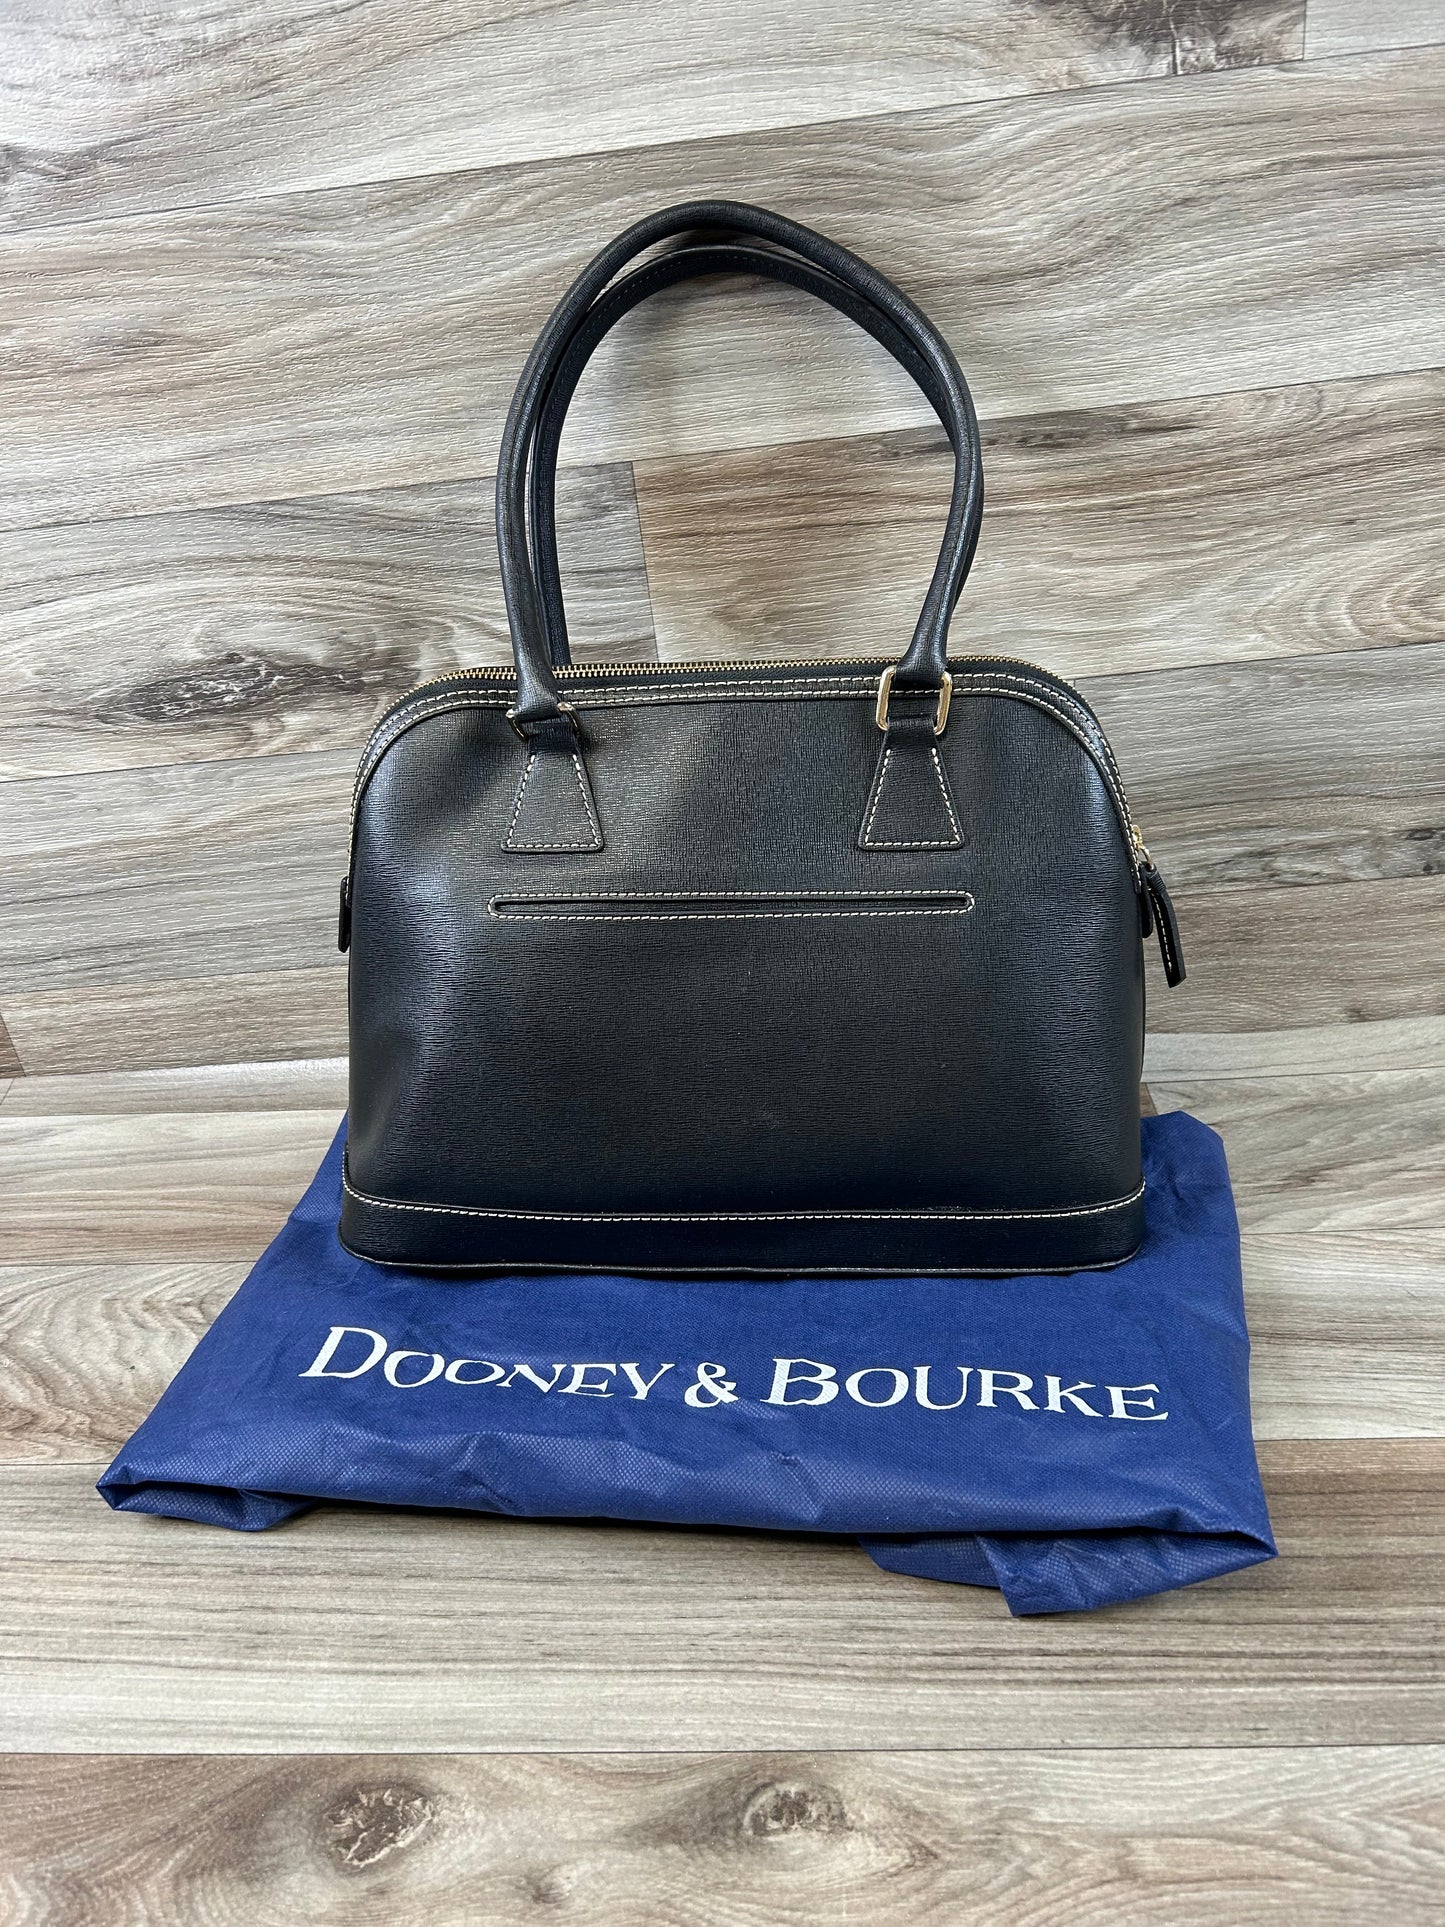 Handbag Designer Dooney And Bourke, Size Large